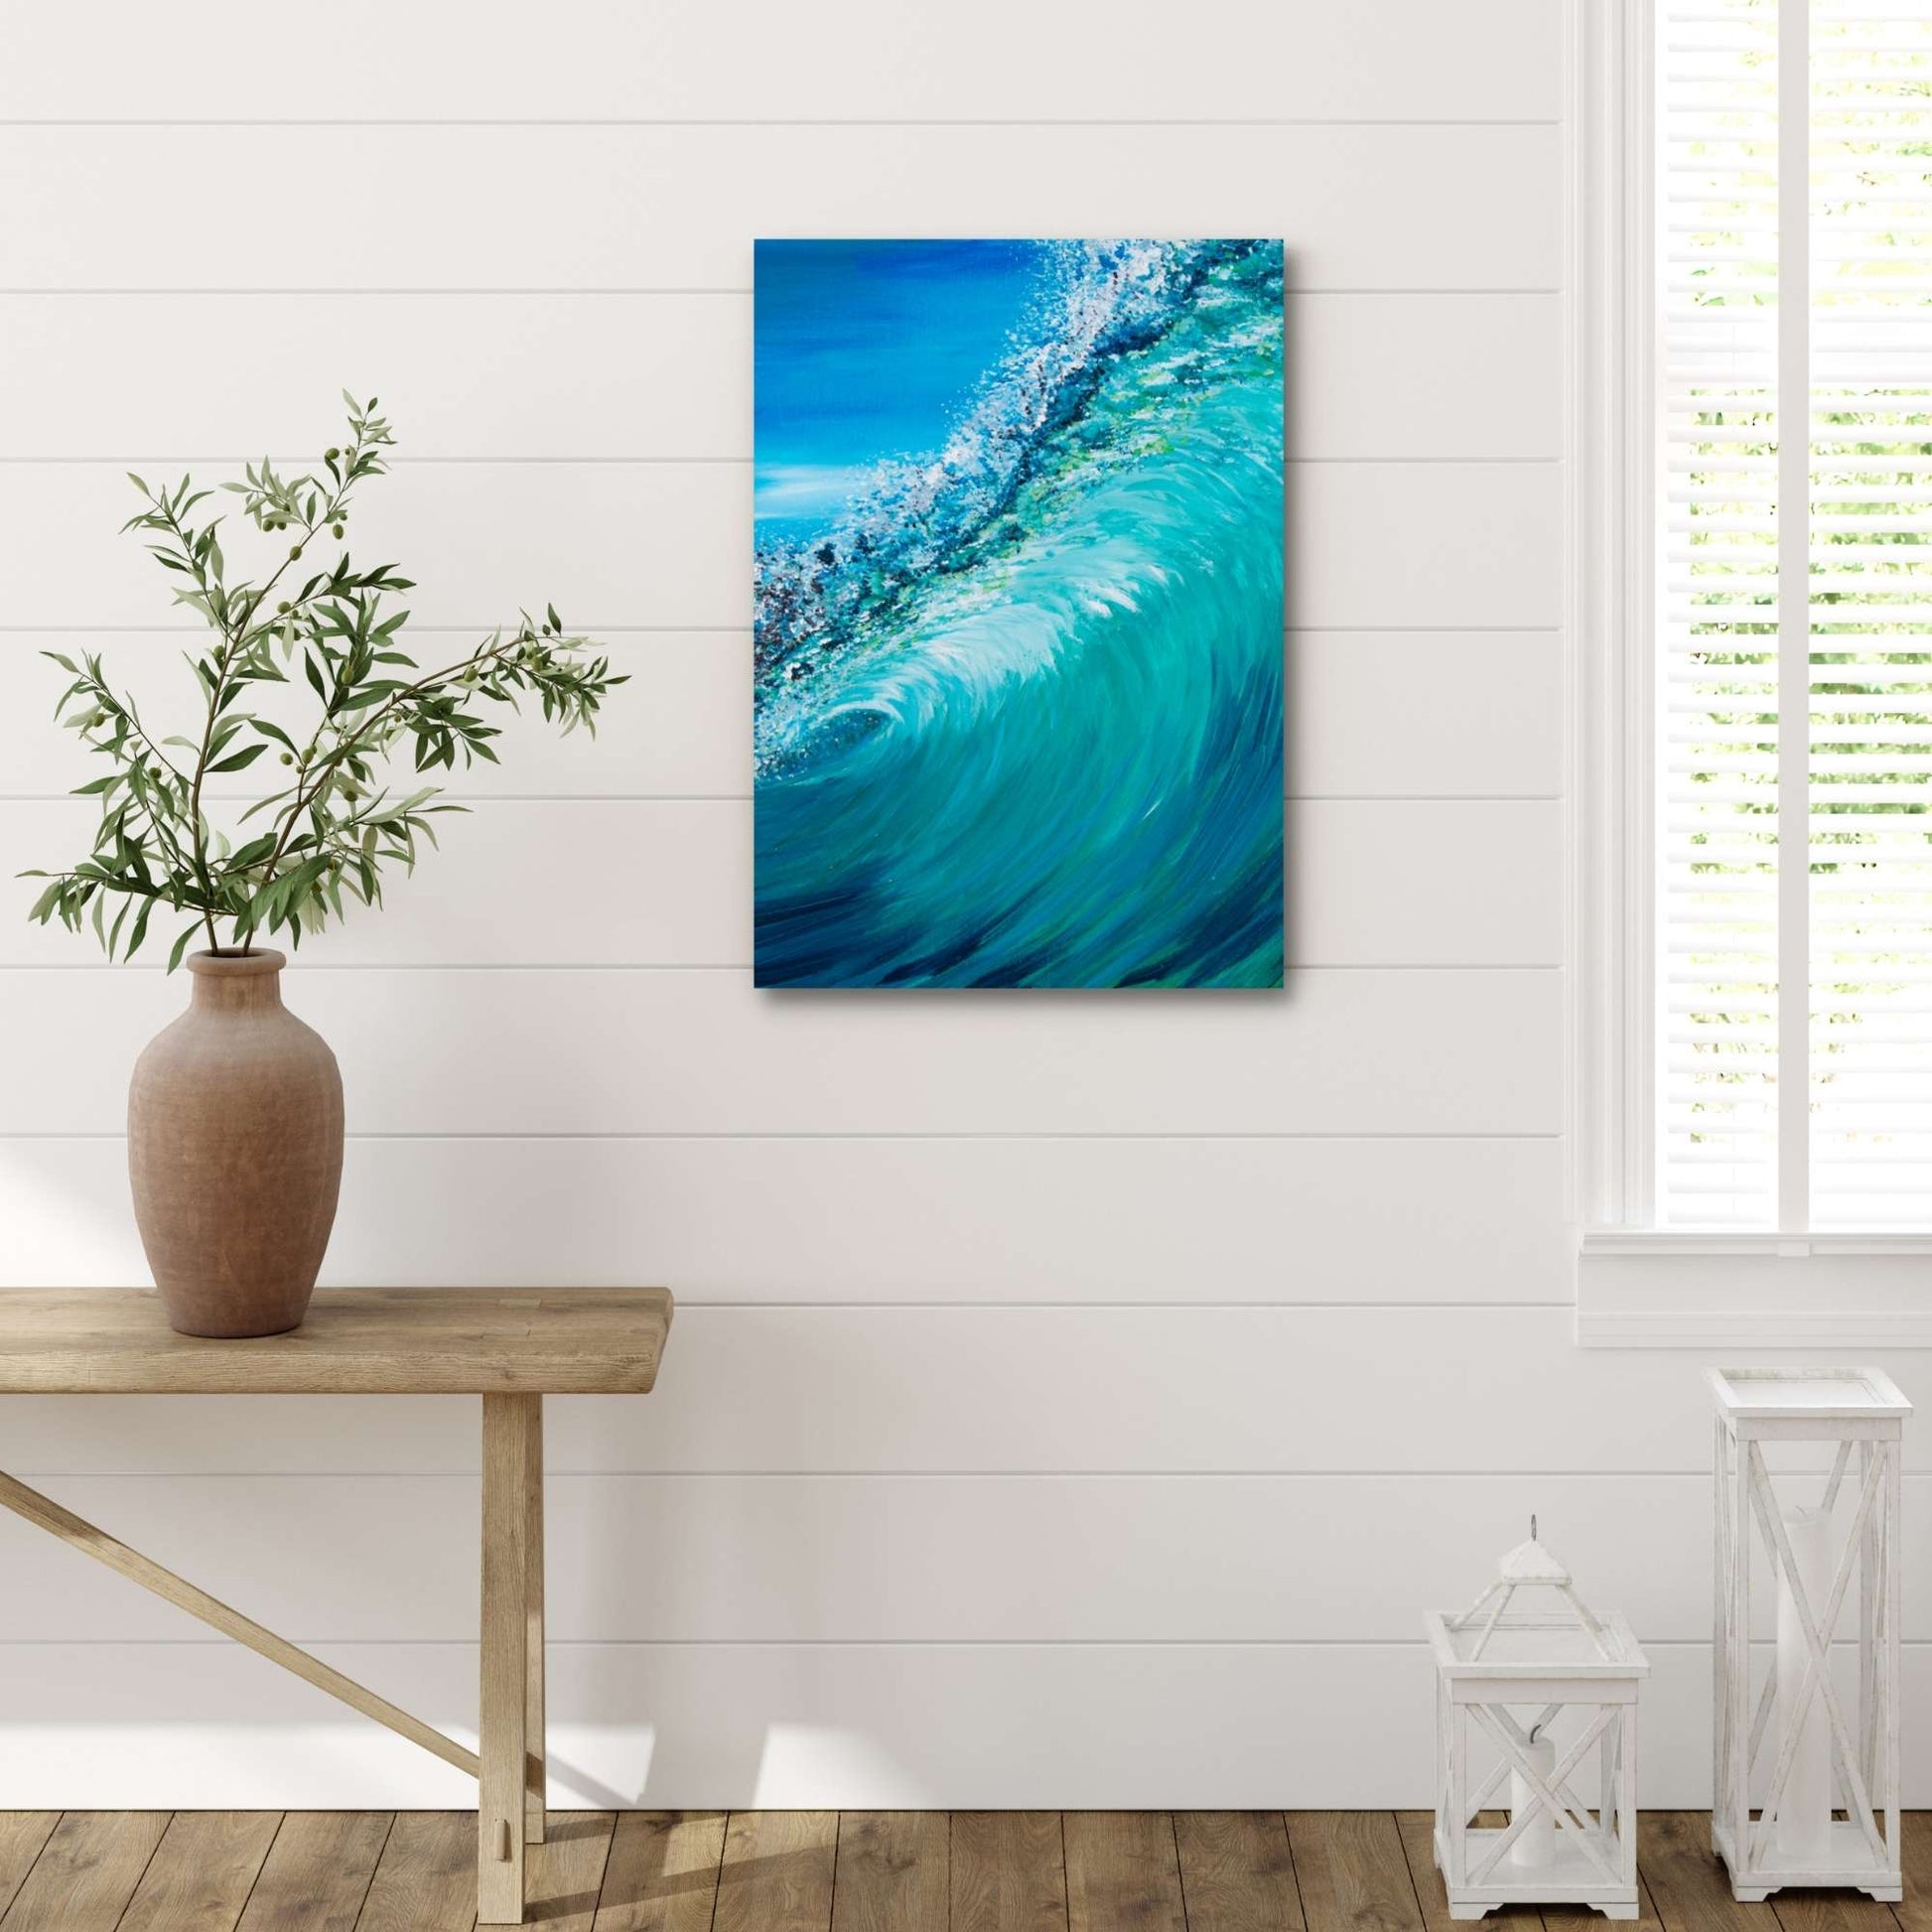 Blue ocean, blue wave, wave art print, hawaii art print, ocean waves